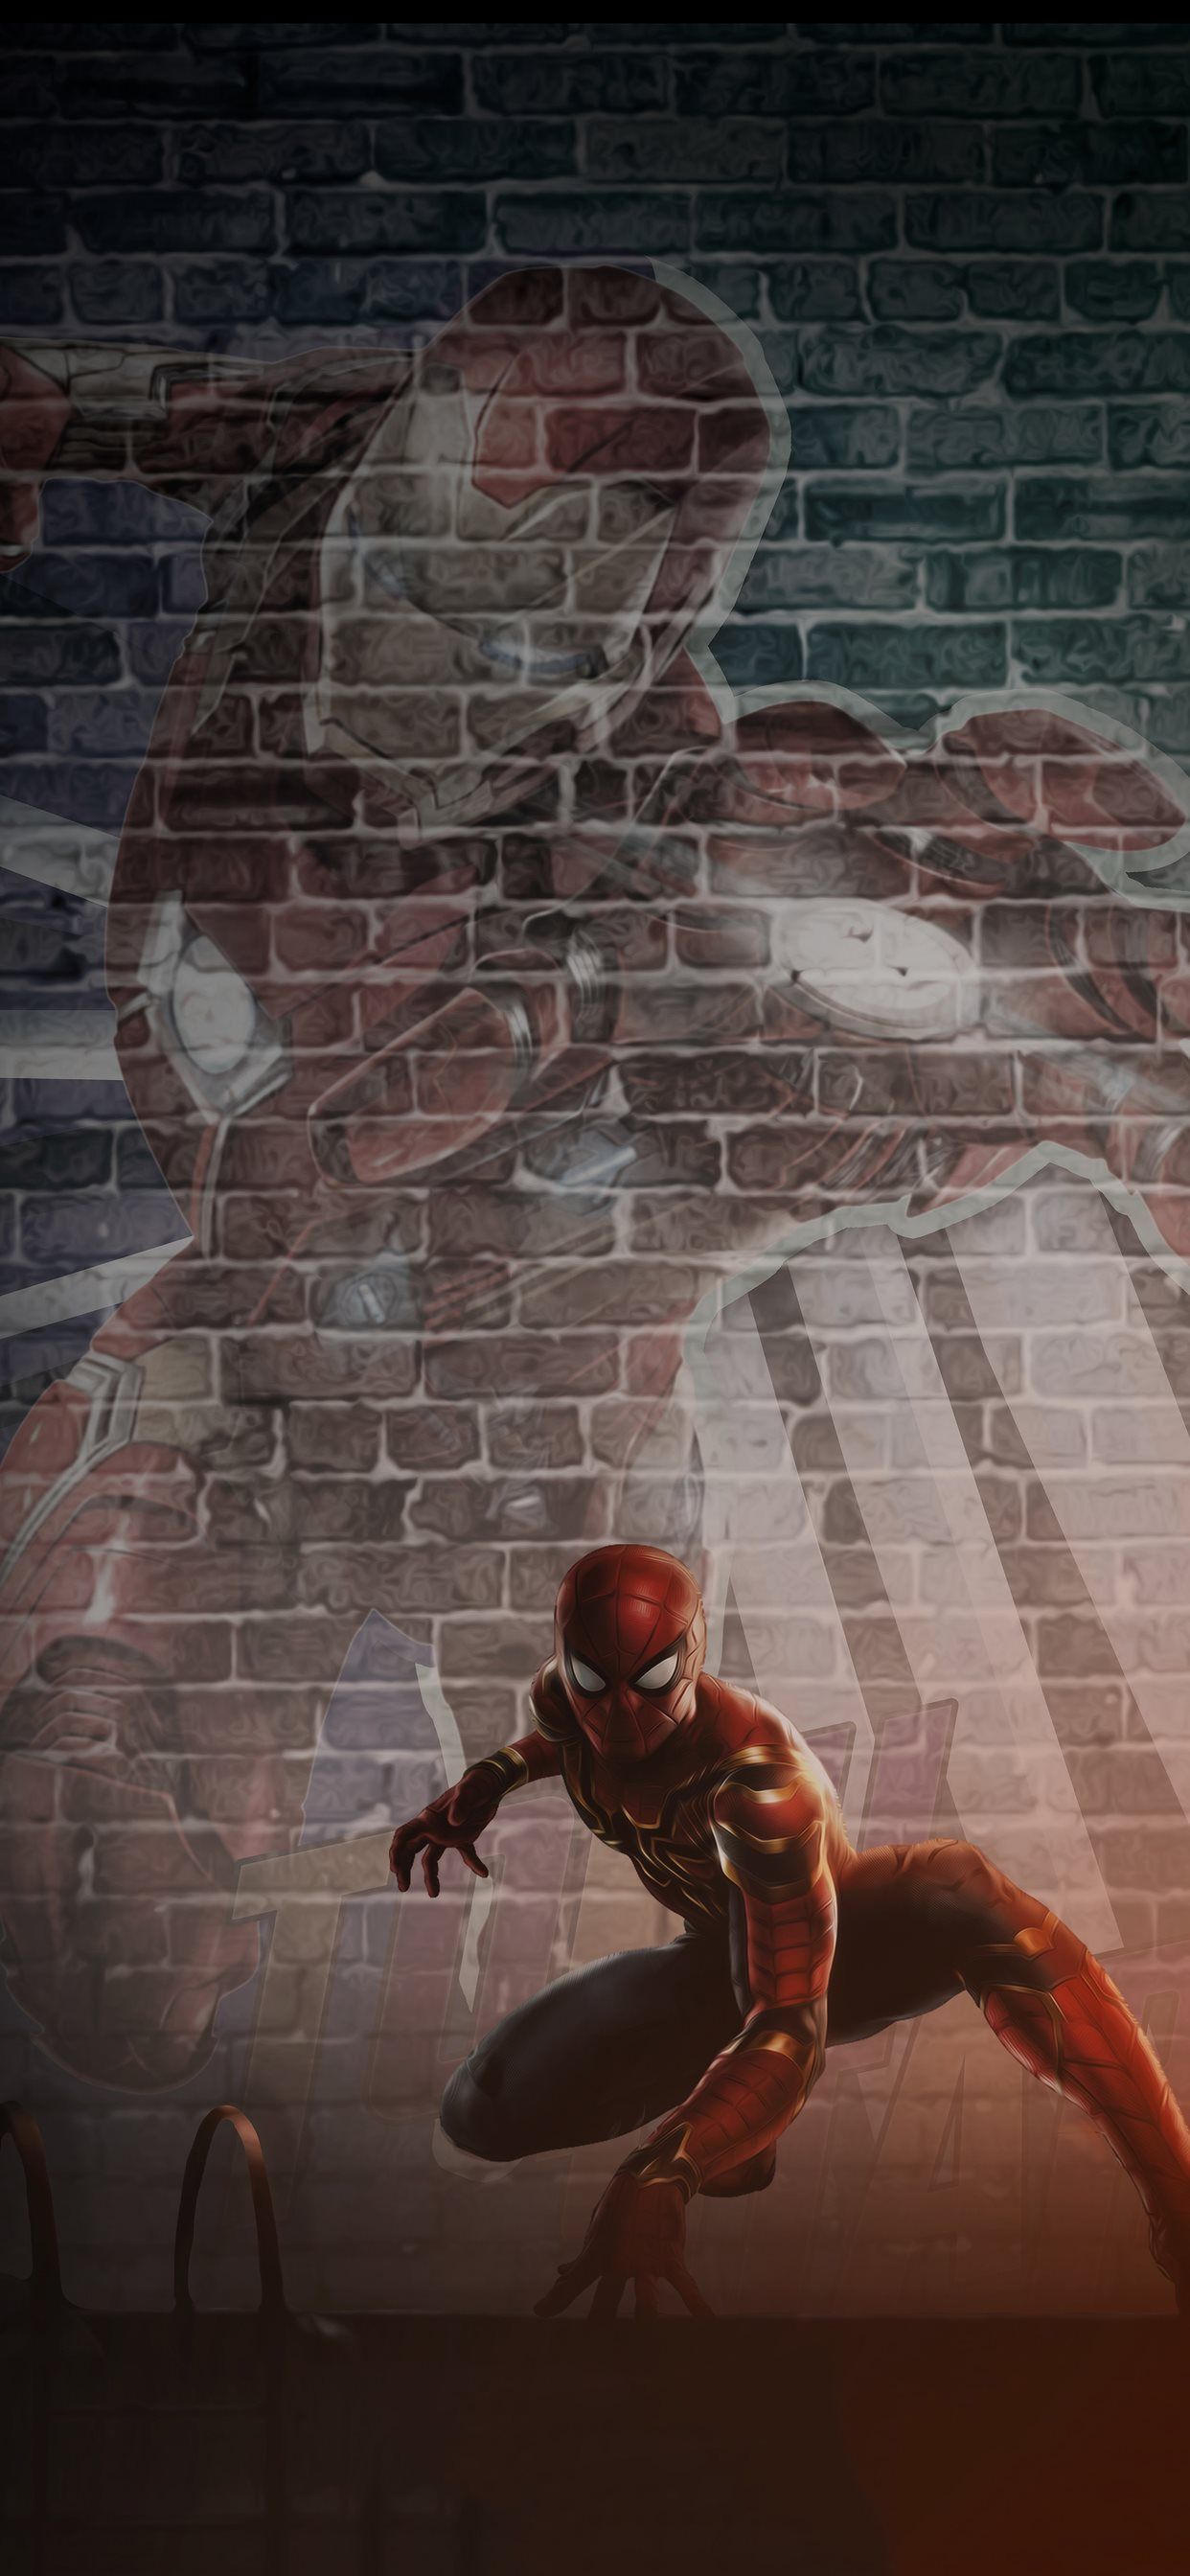 عکس استوک فوق خفن مرد عنکبوتی مناسب صفحه لپتاپ نوجوان